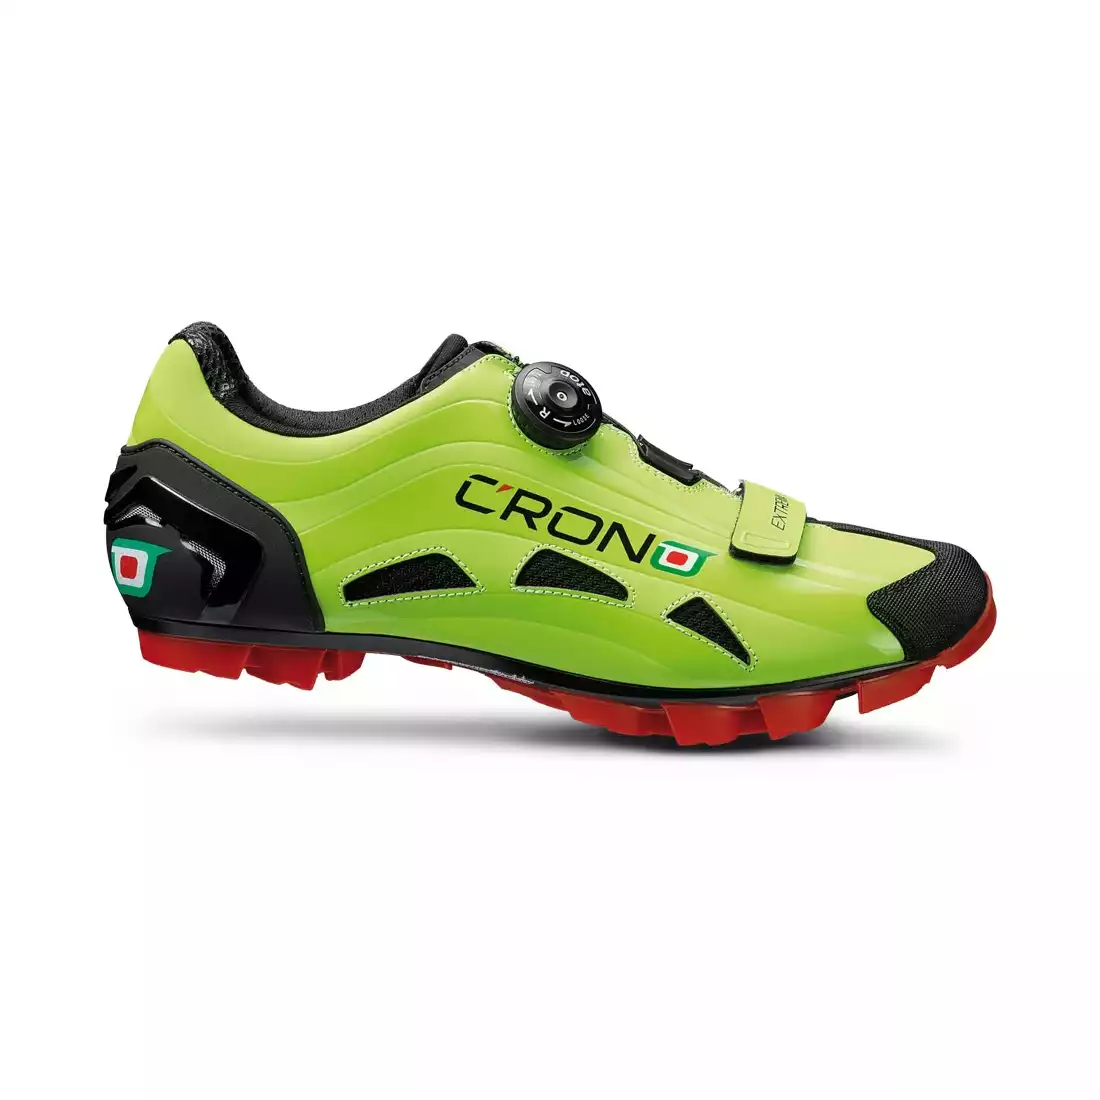 CRONO EXTREMA NYLON - buty rowerowe MTB - kolor: Zielony